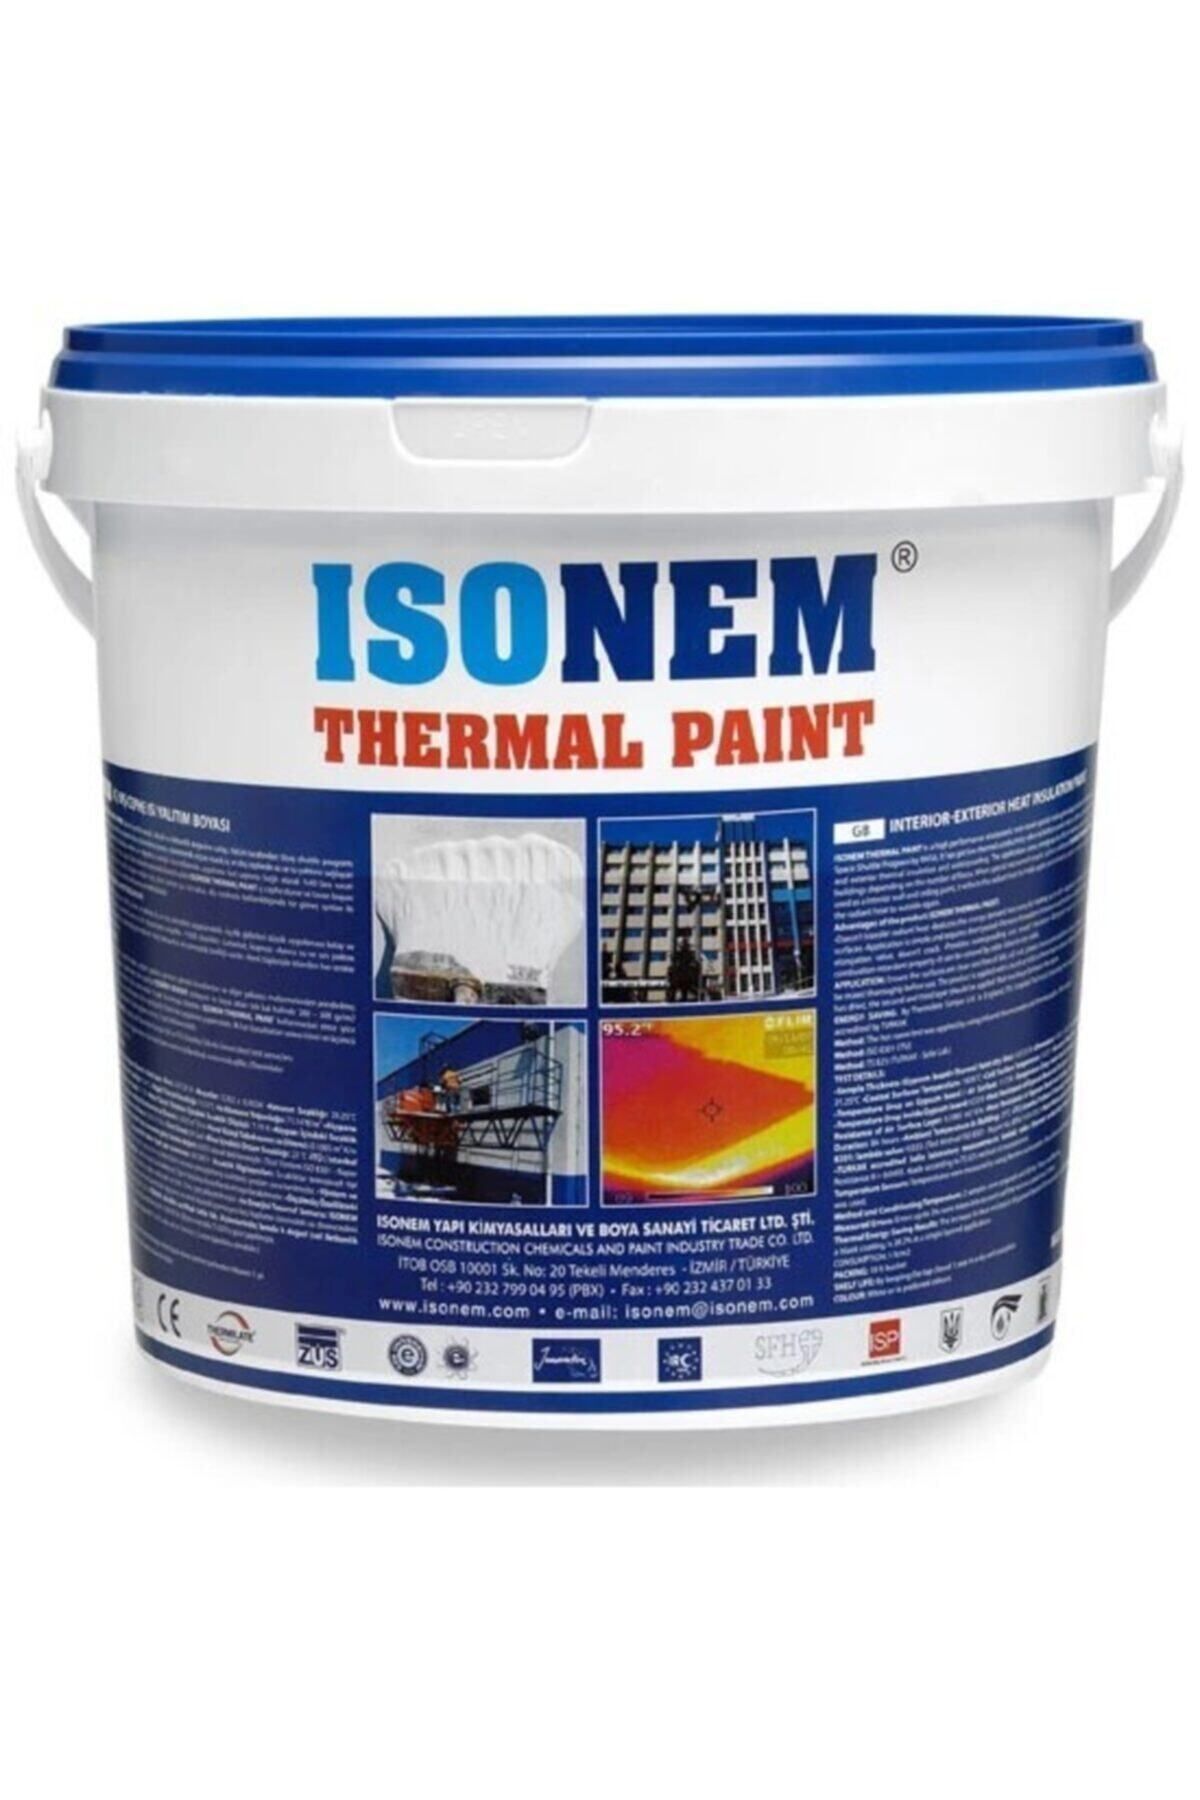 Isonem Thermal Paint Iç - Dış Cephe Yalıtım Boyası Beyaz 18 Kg